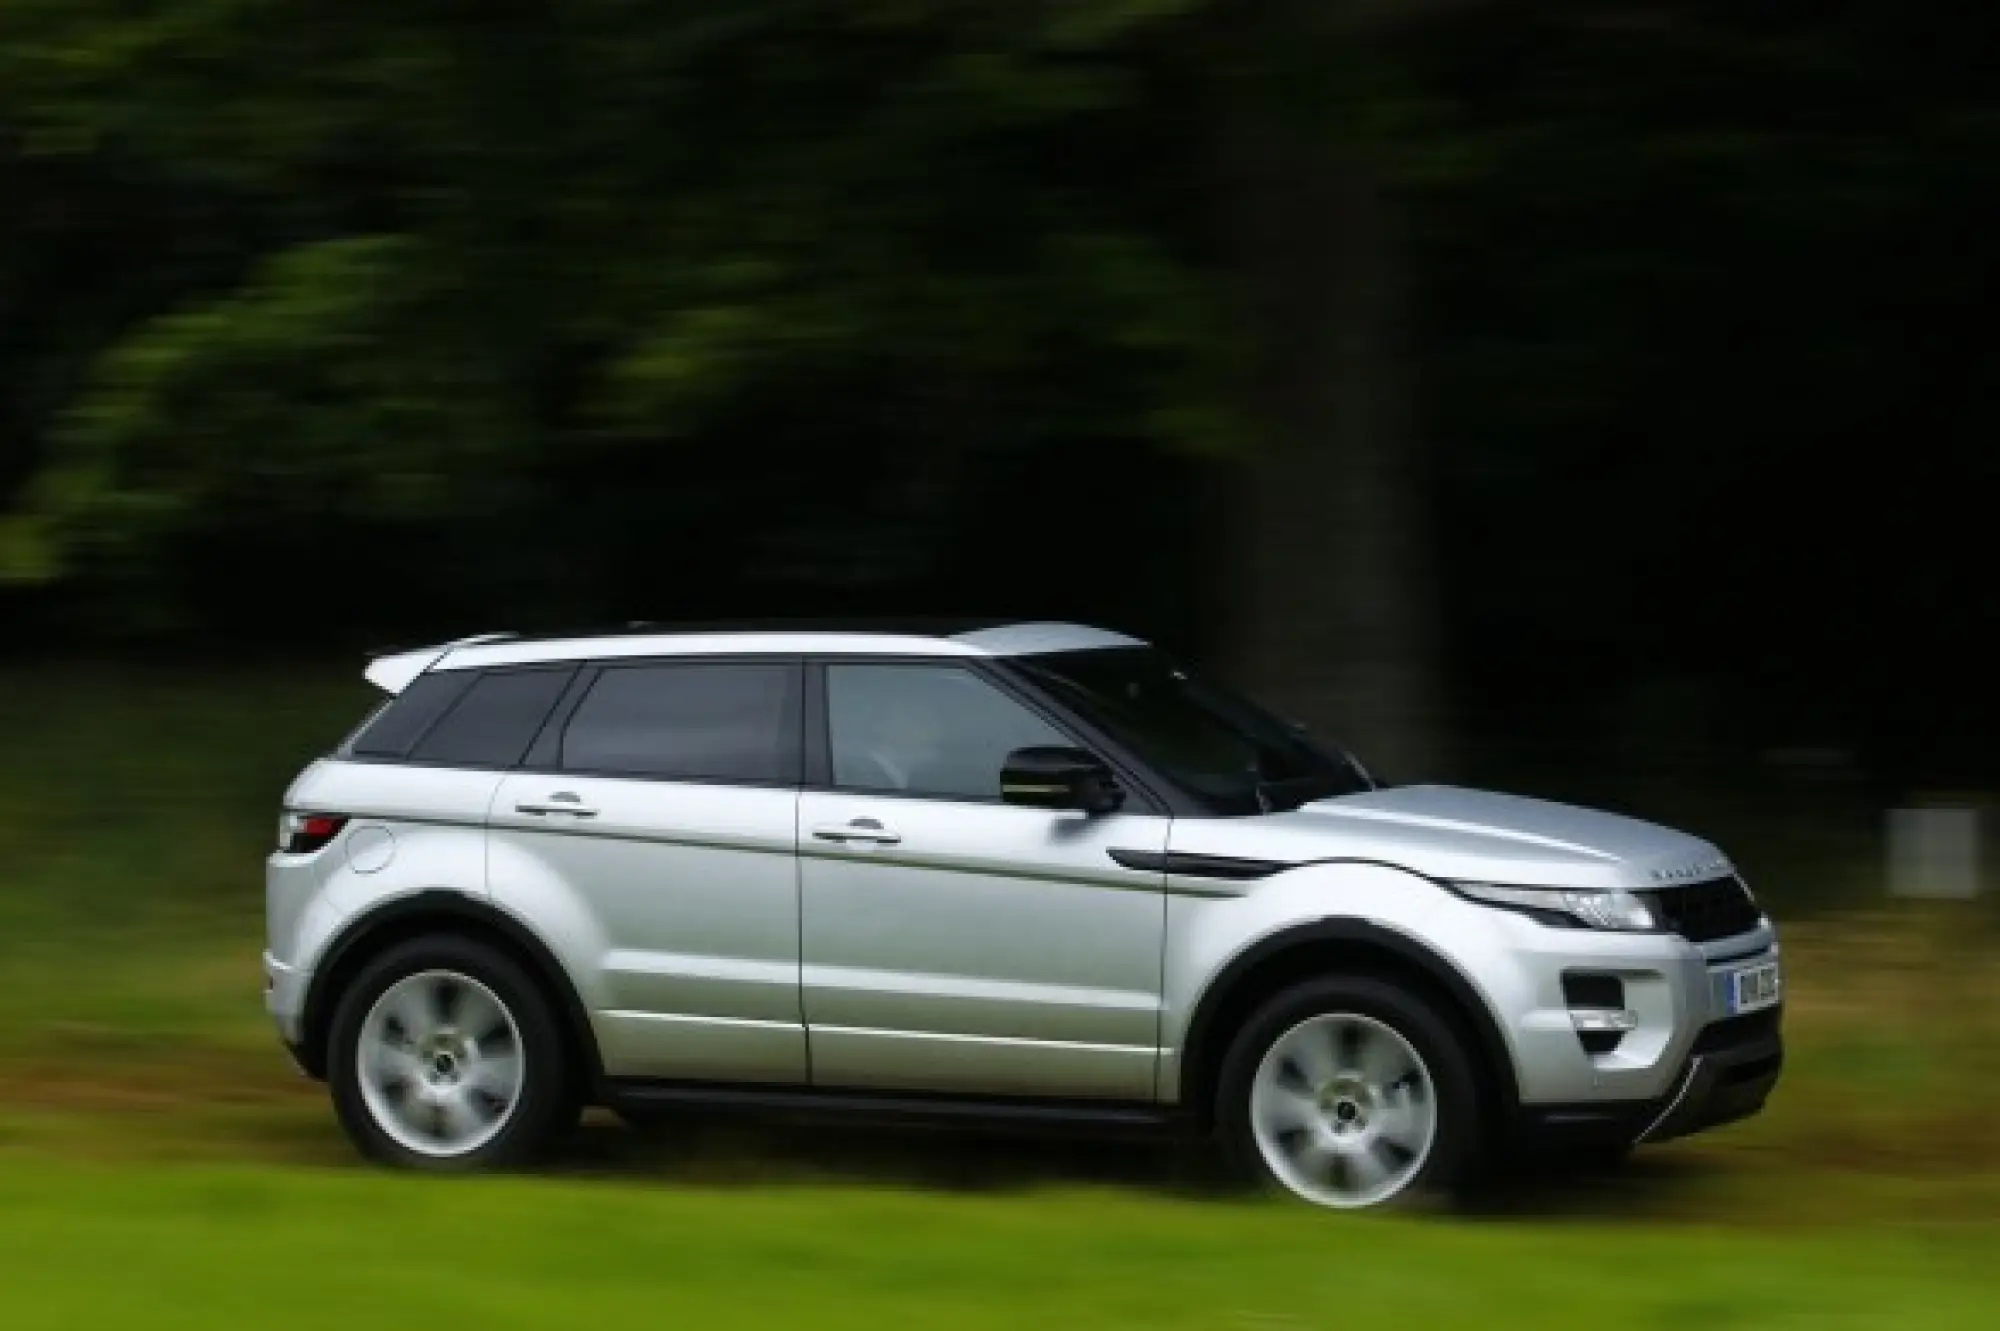 Land Rover Range Rover Evoque nuove foto ufficiali - 94